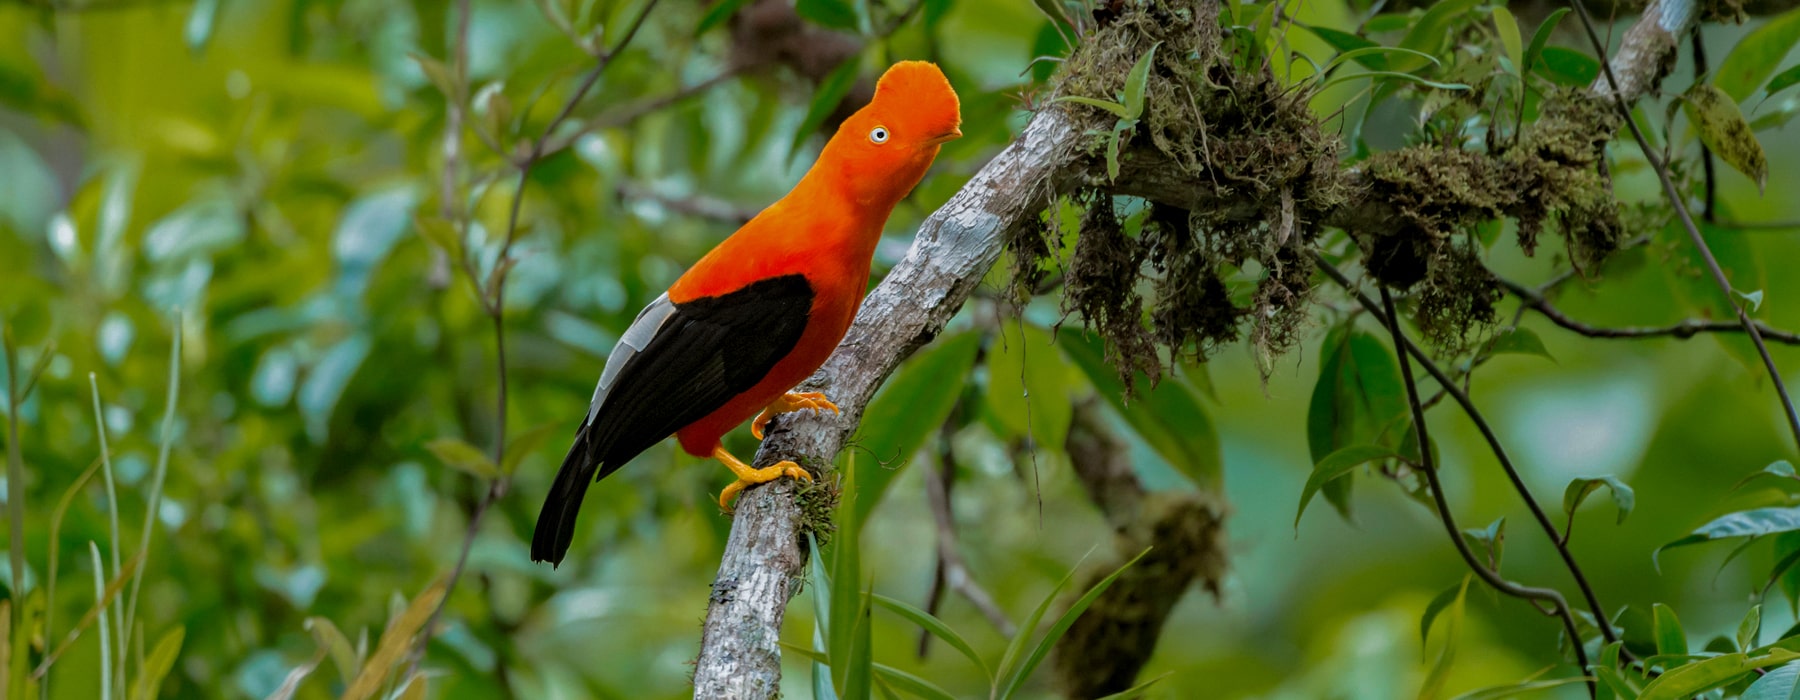 THE MOST UNIQUE BIRDS OF THE PERUVIAN AMAZON